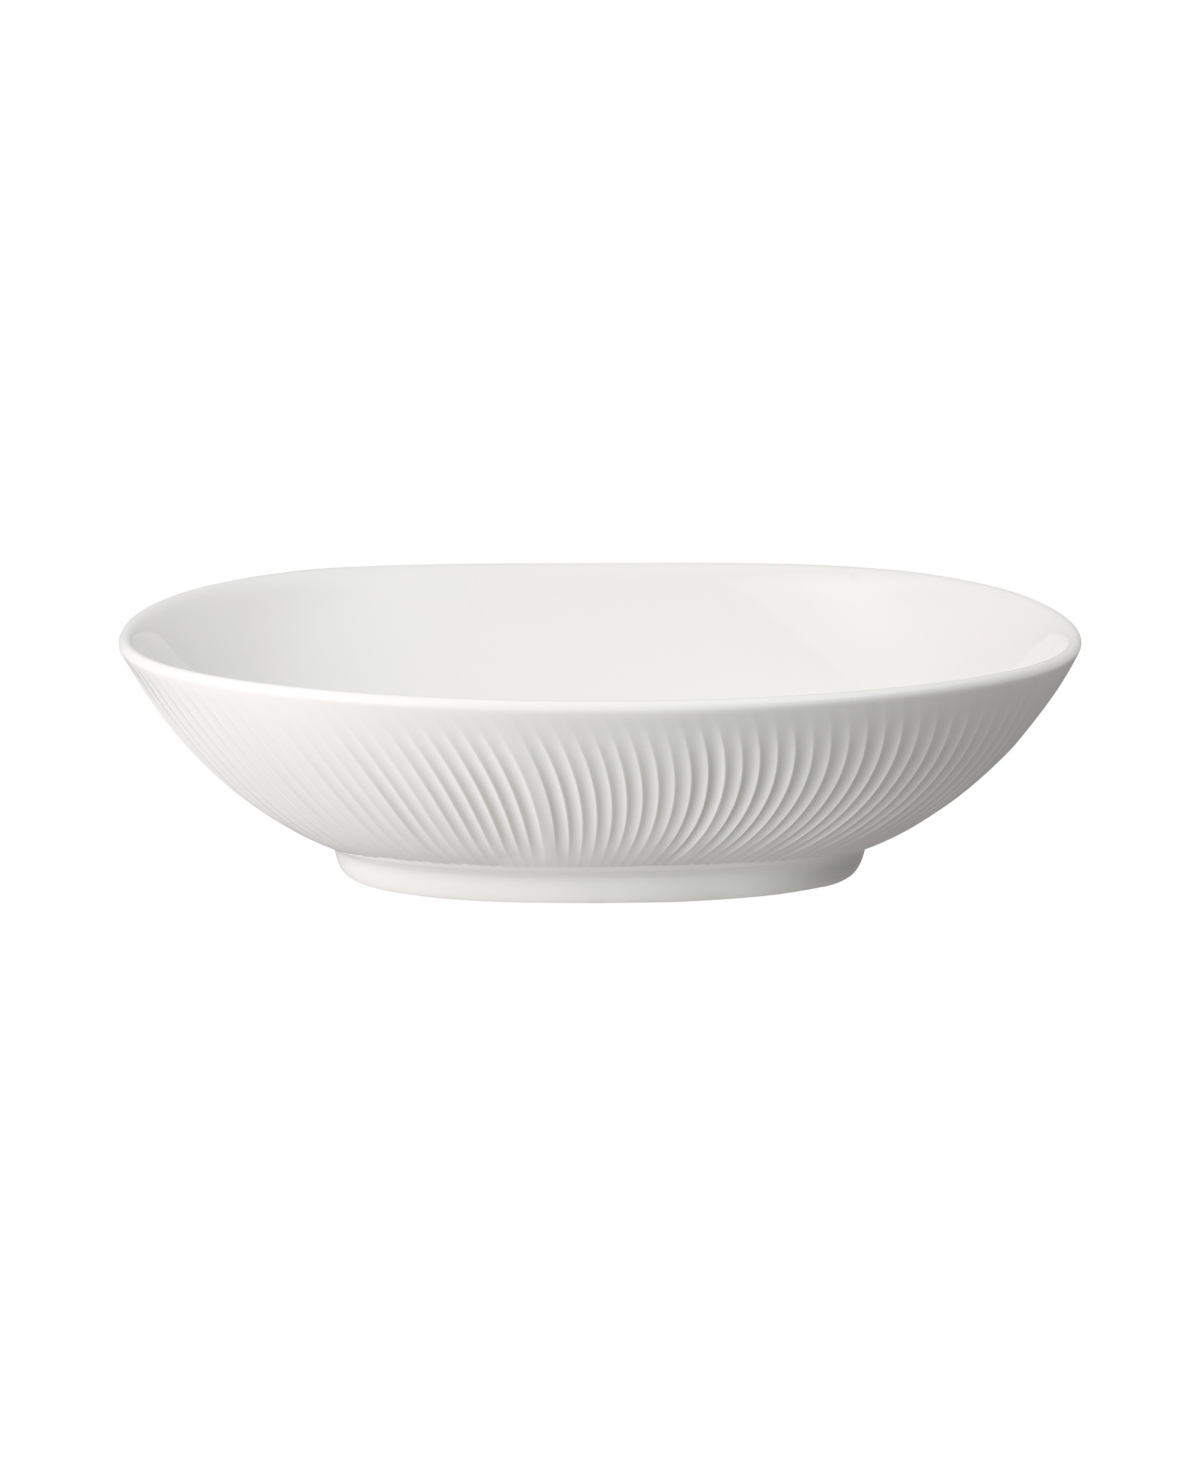 Denby Porcelain Arc Serving Bowl In White